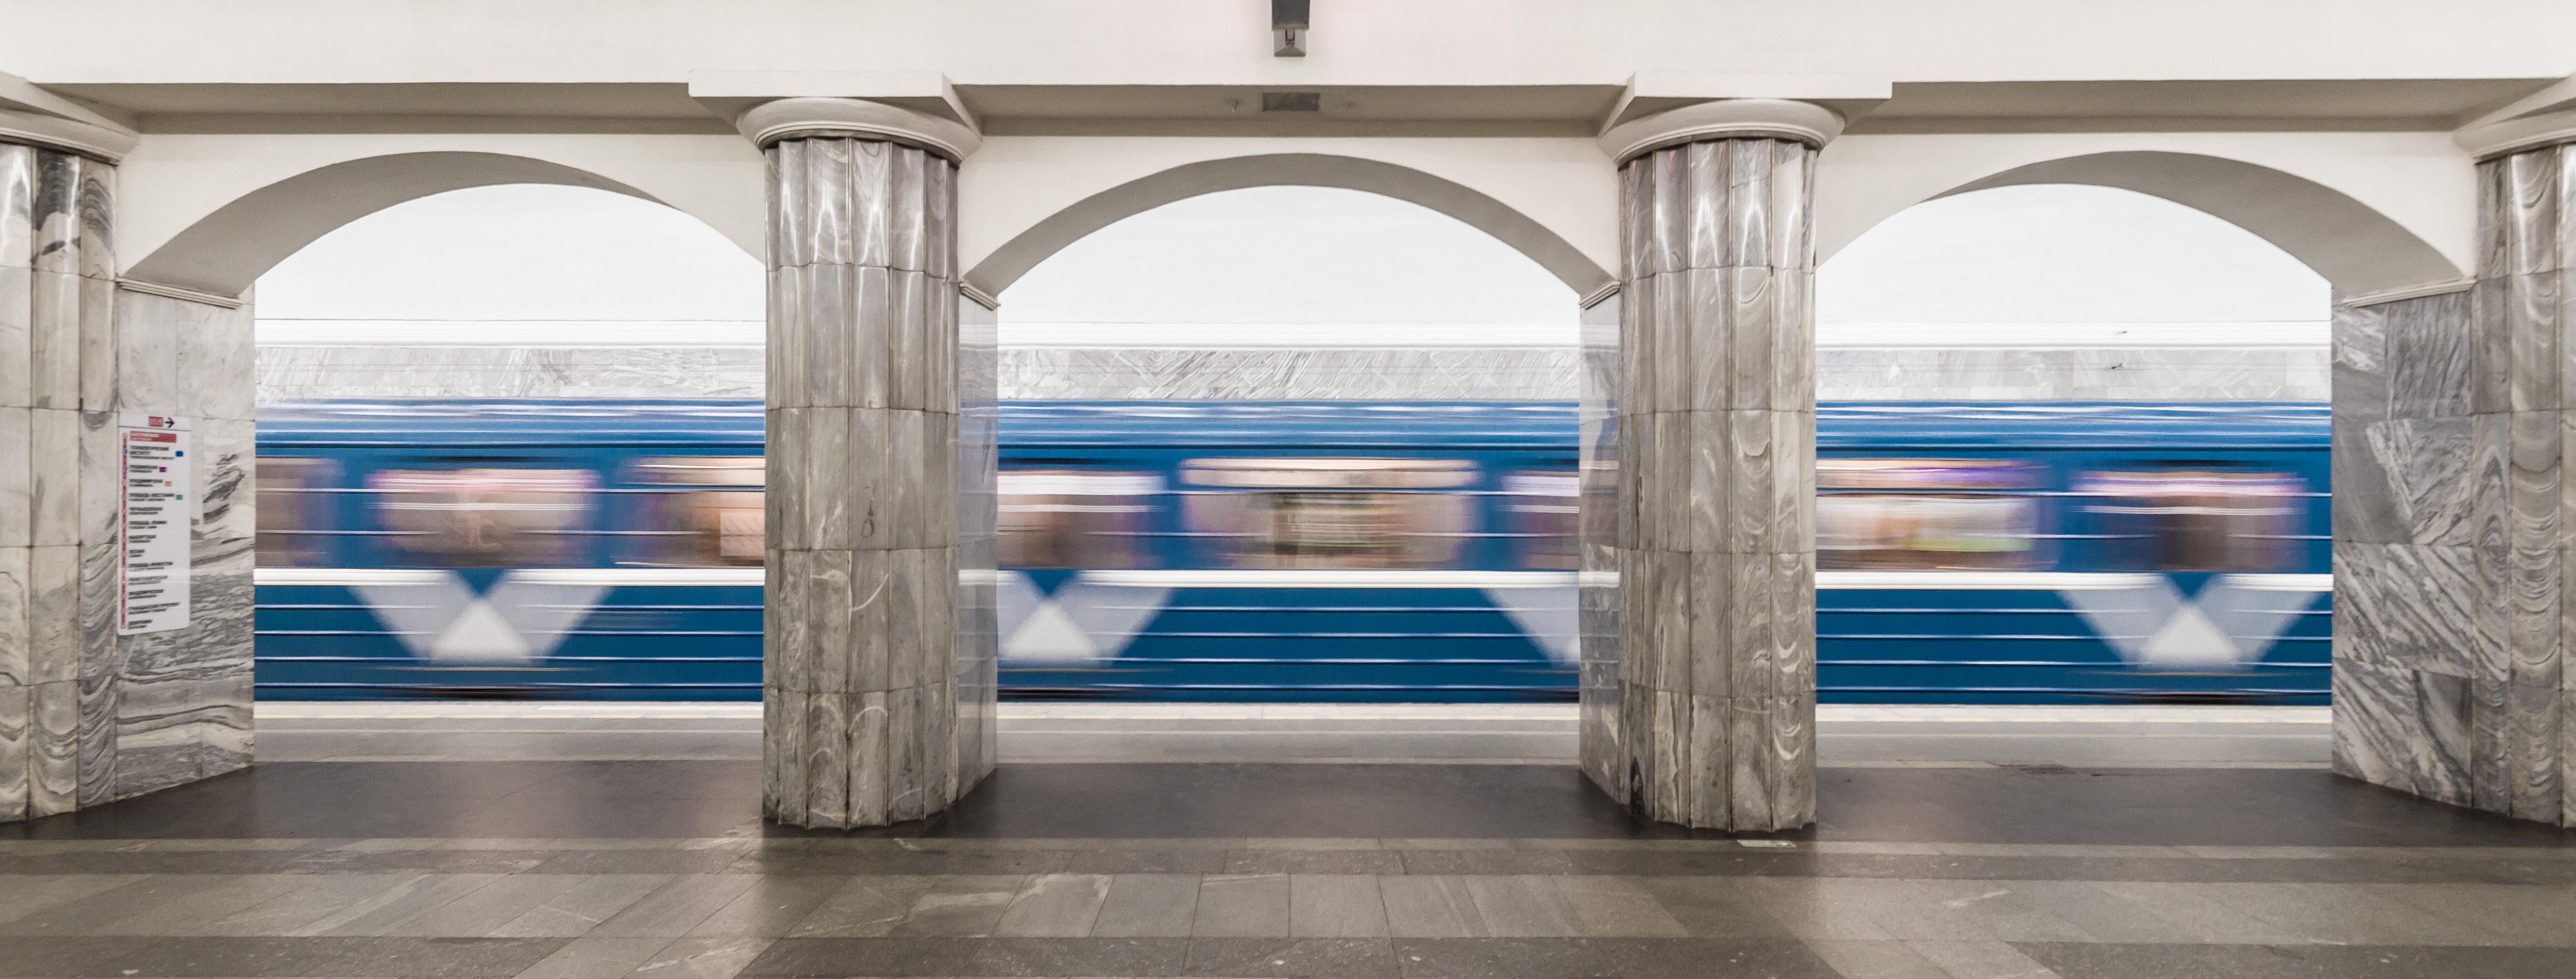 Visite guidée des métros de Saint Pétersbourg